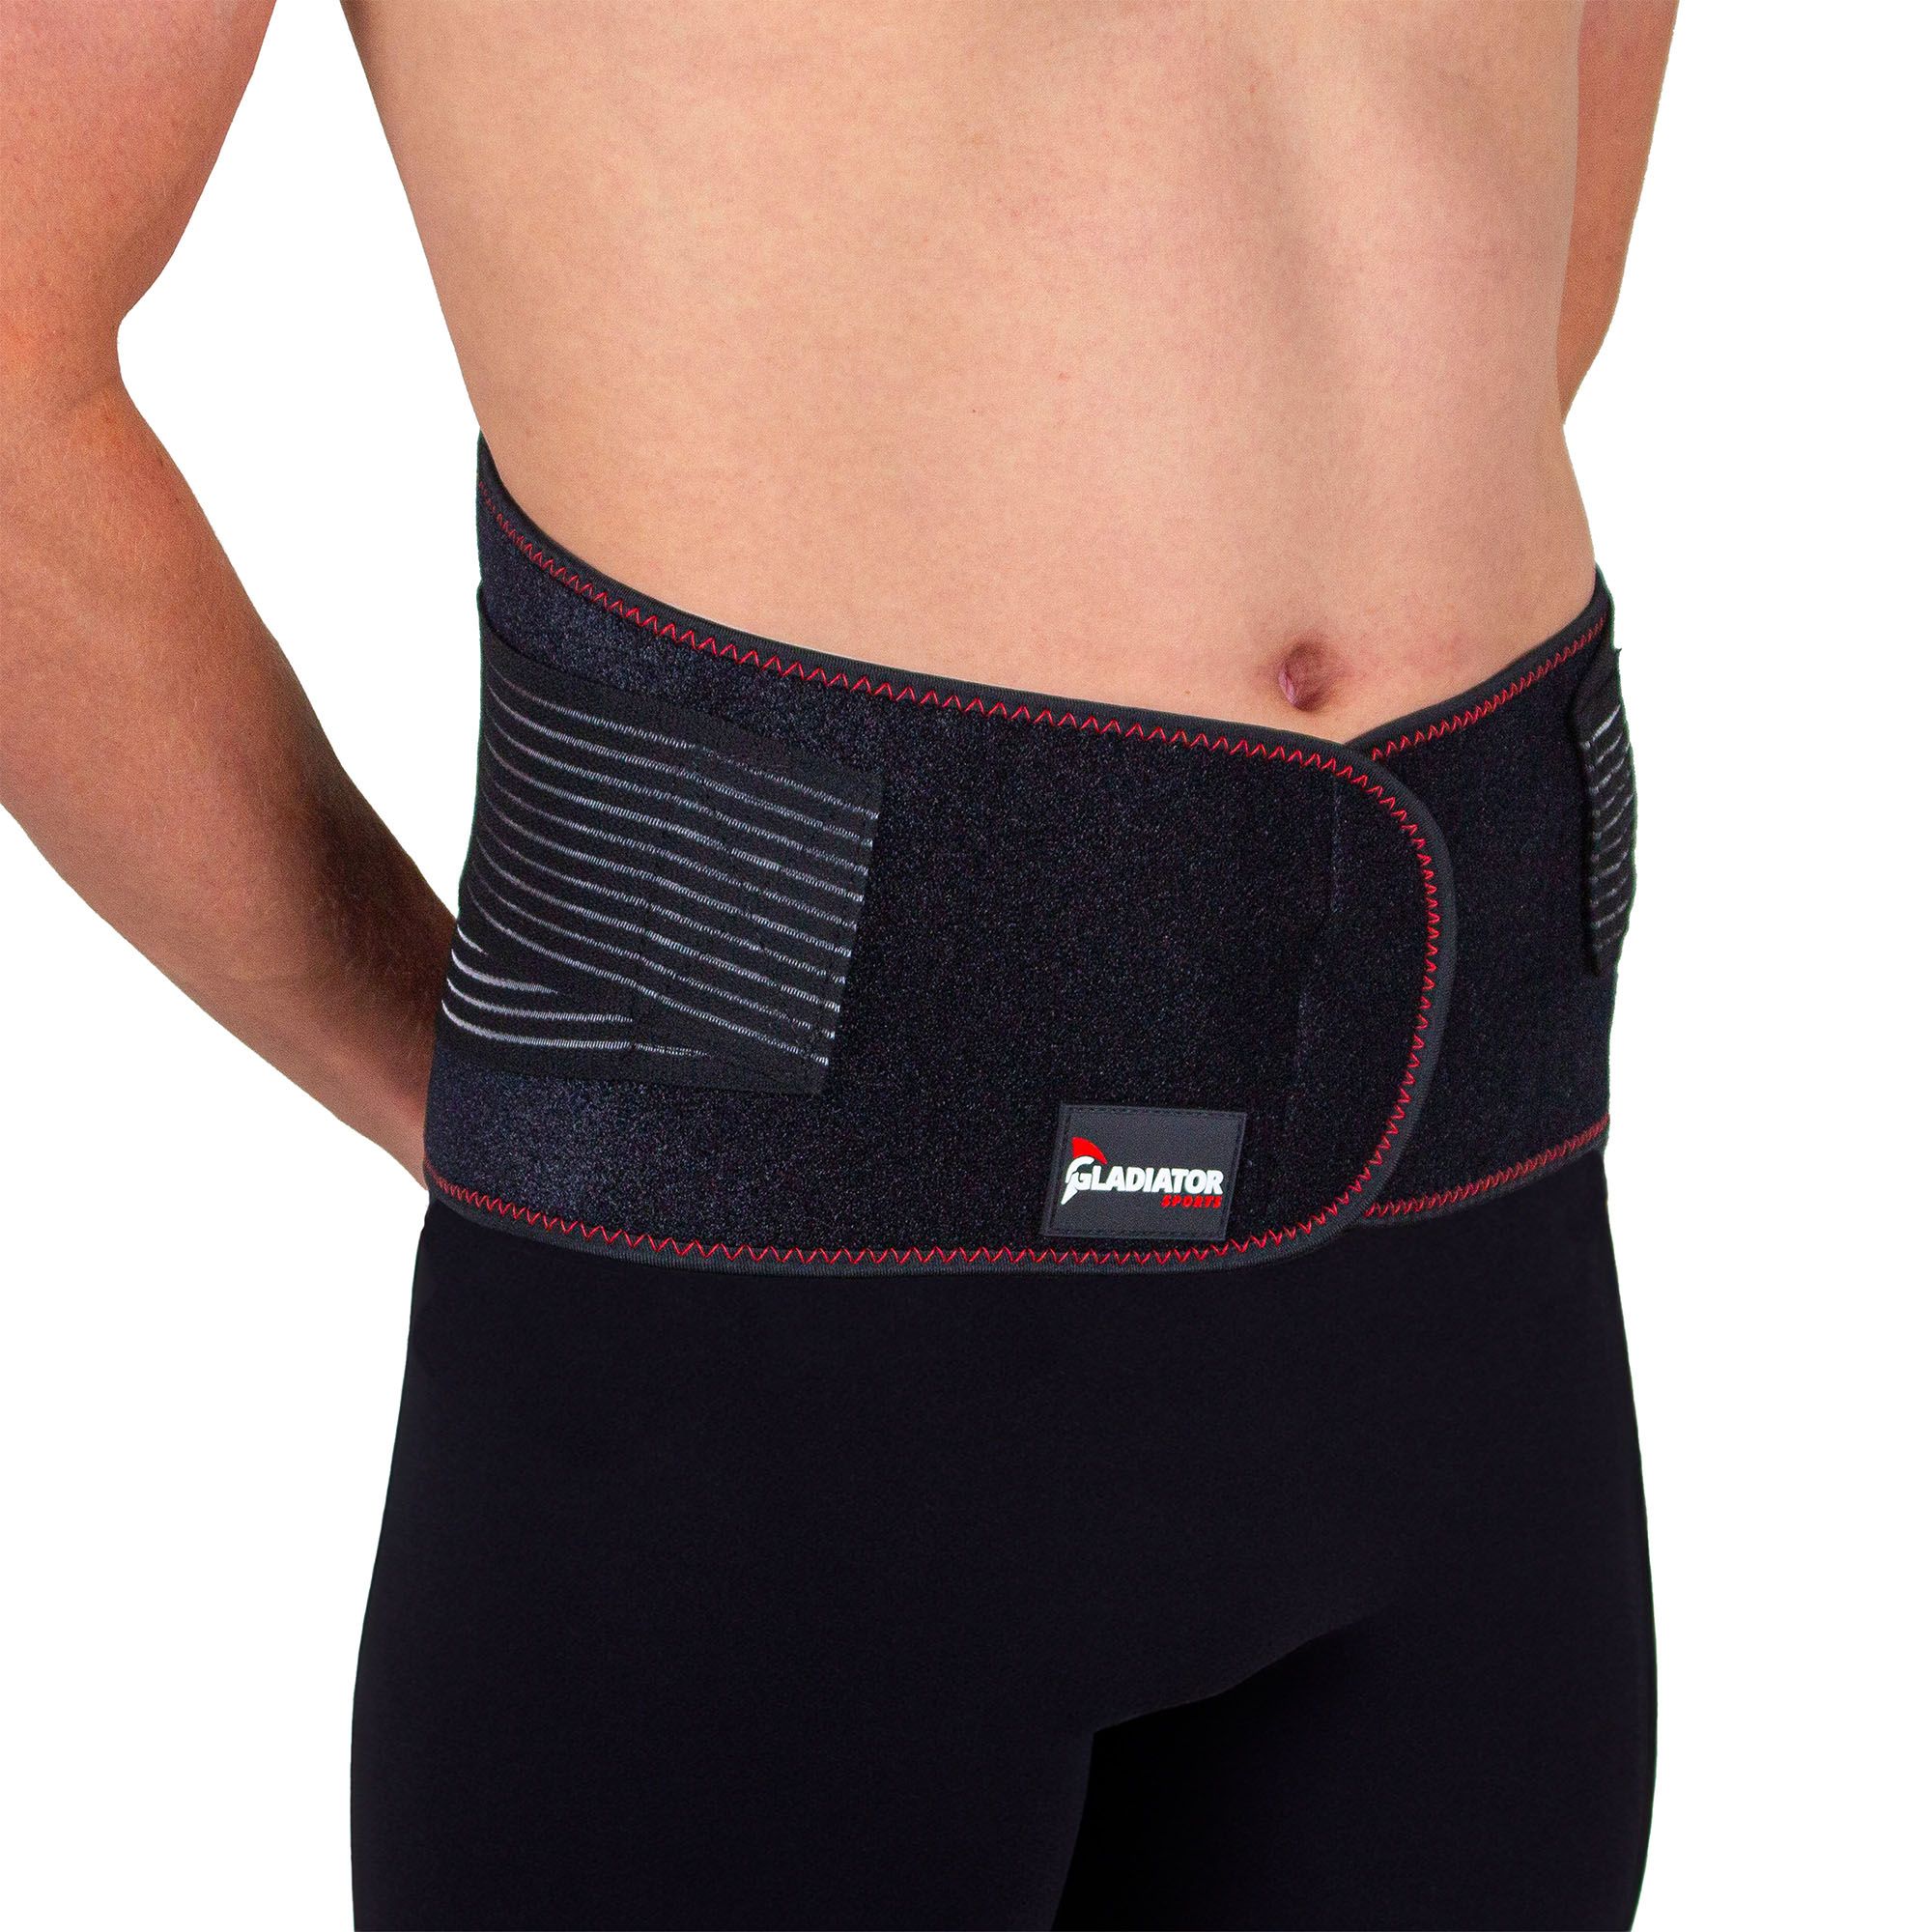 Gladiator Sports Rückenbandage vorderseite